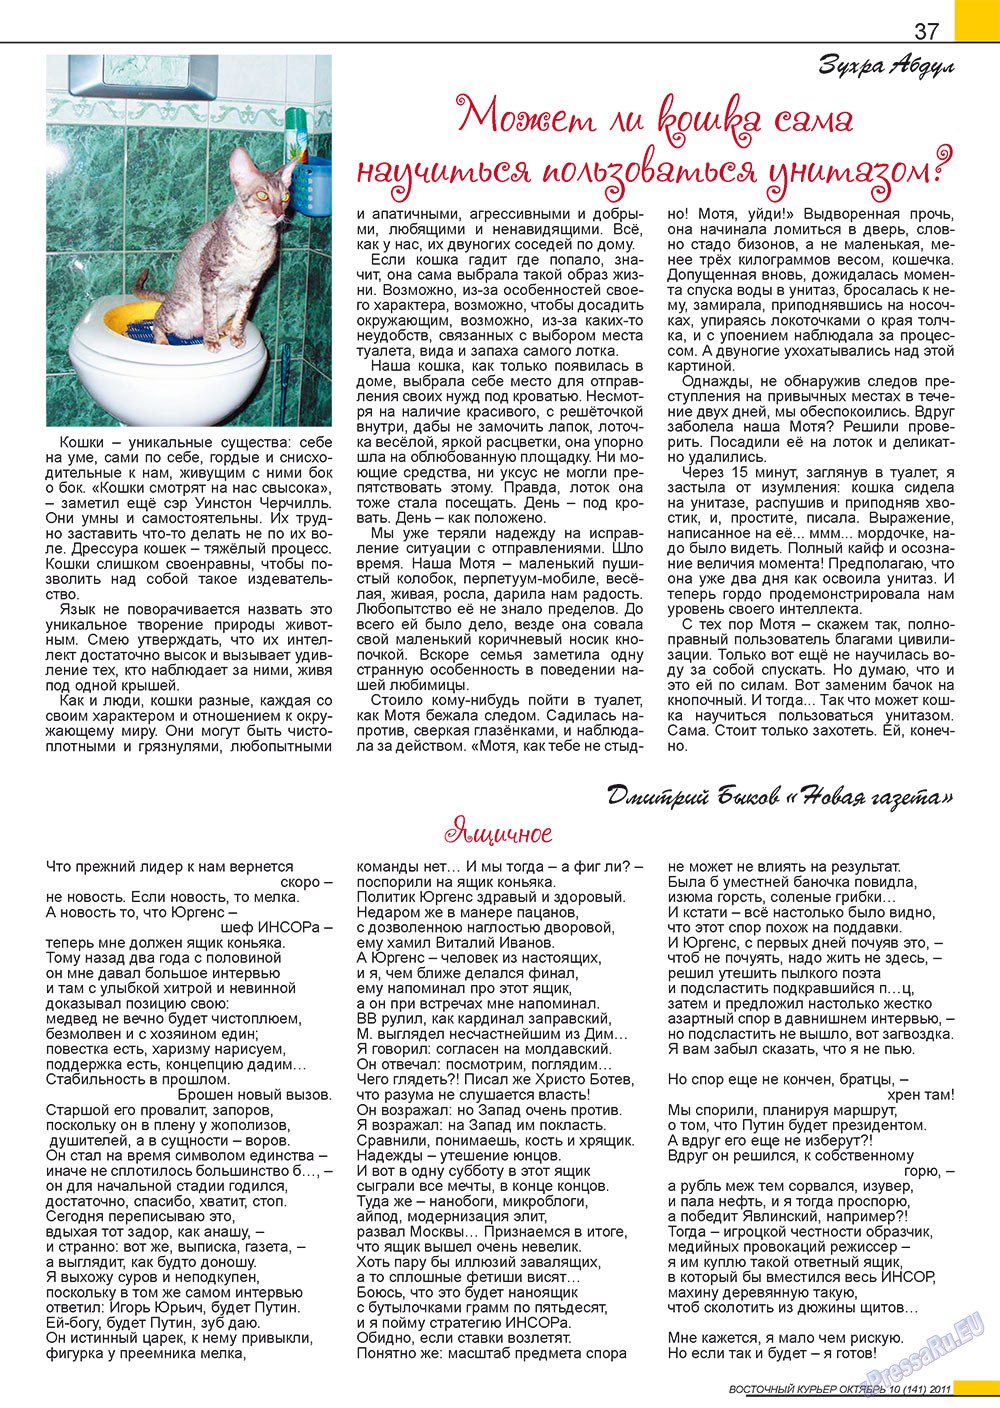 Восточный курьер (журнал). 2011 год, номер 10, стр. 37